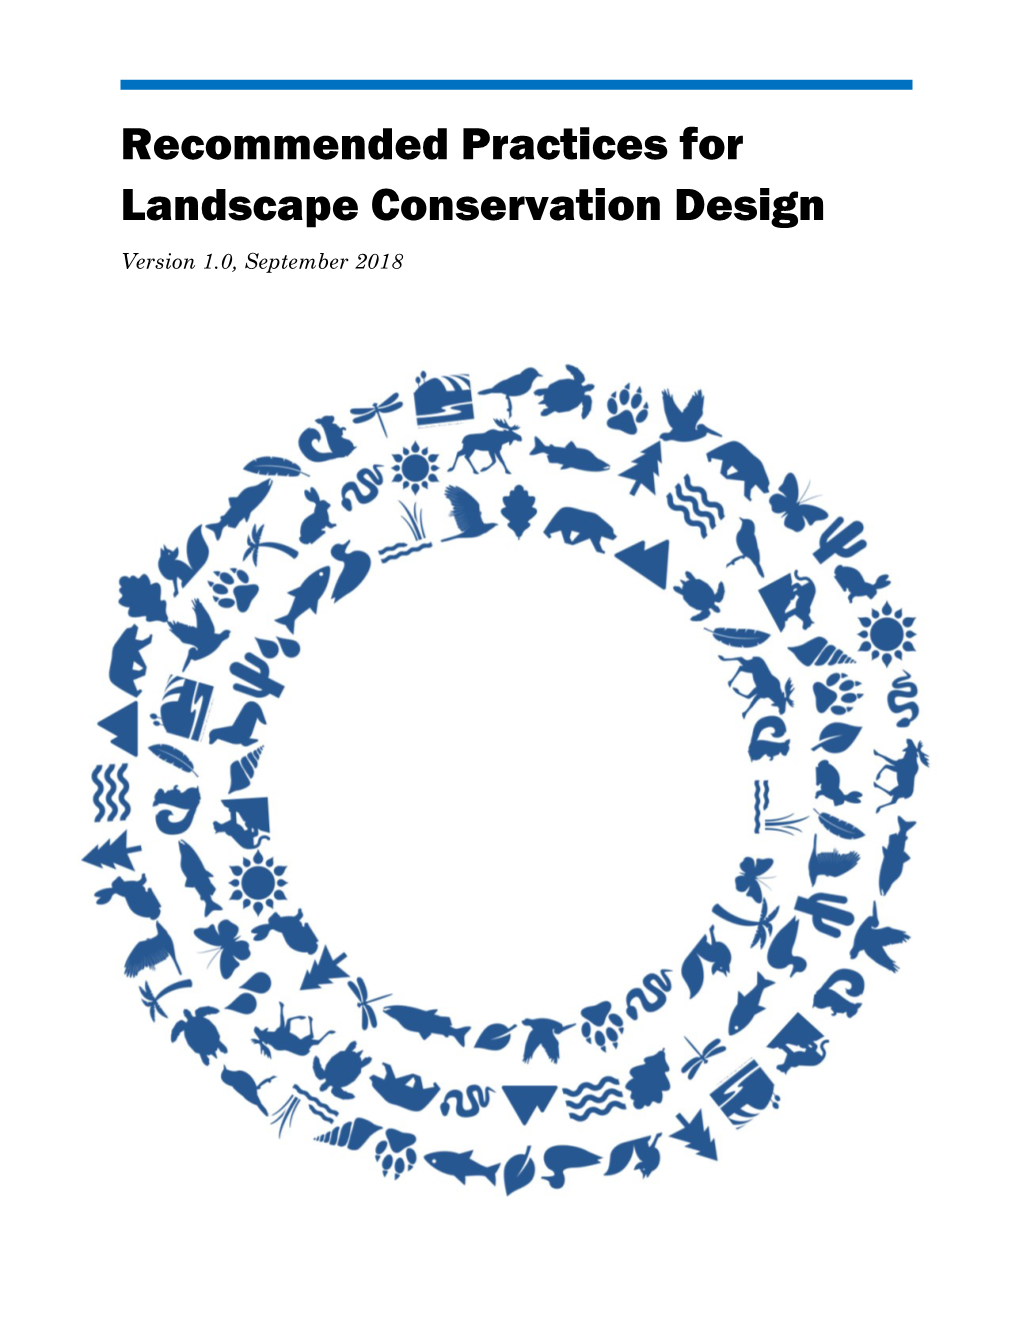 Recommended Practices for Landscape Conservation Design Version 1.0, September 2018